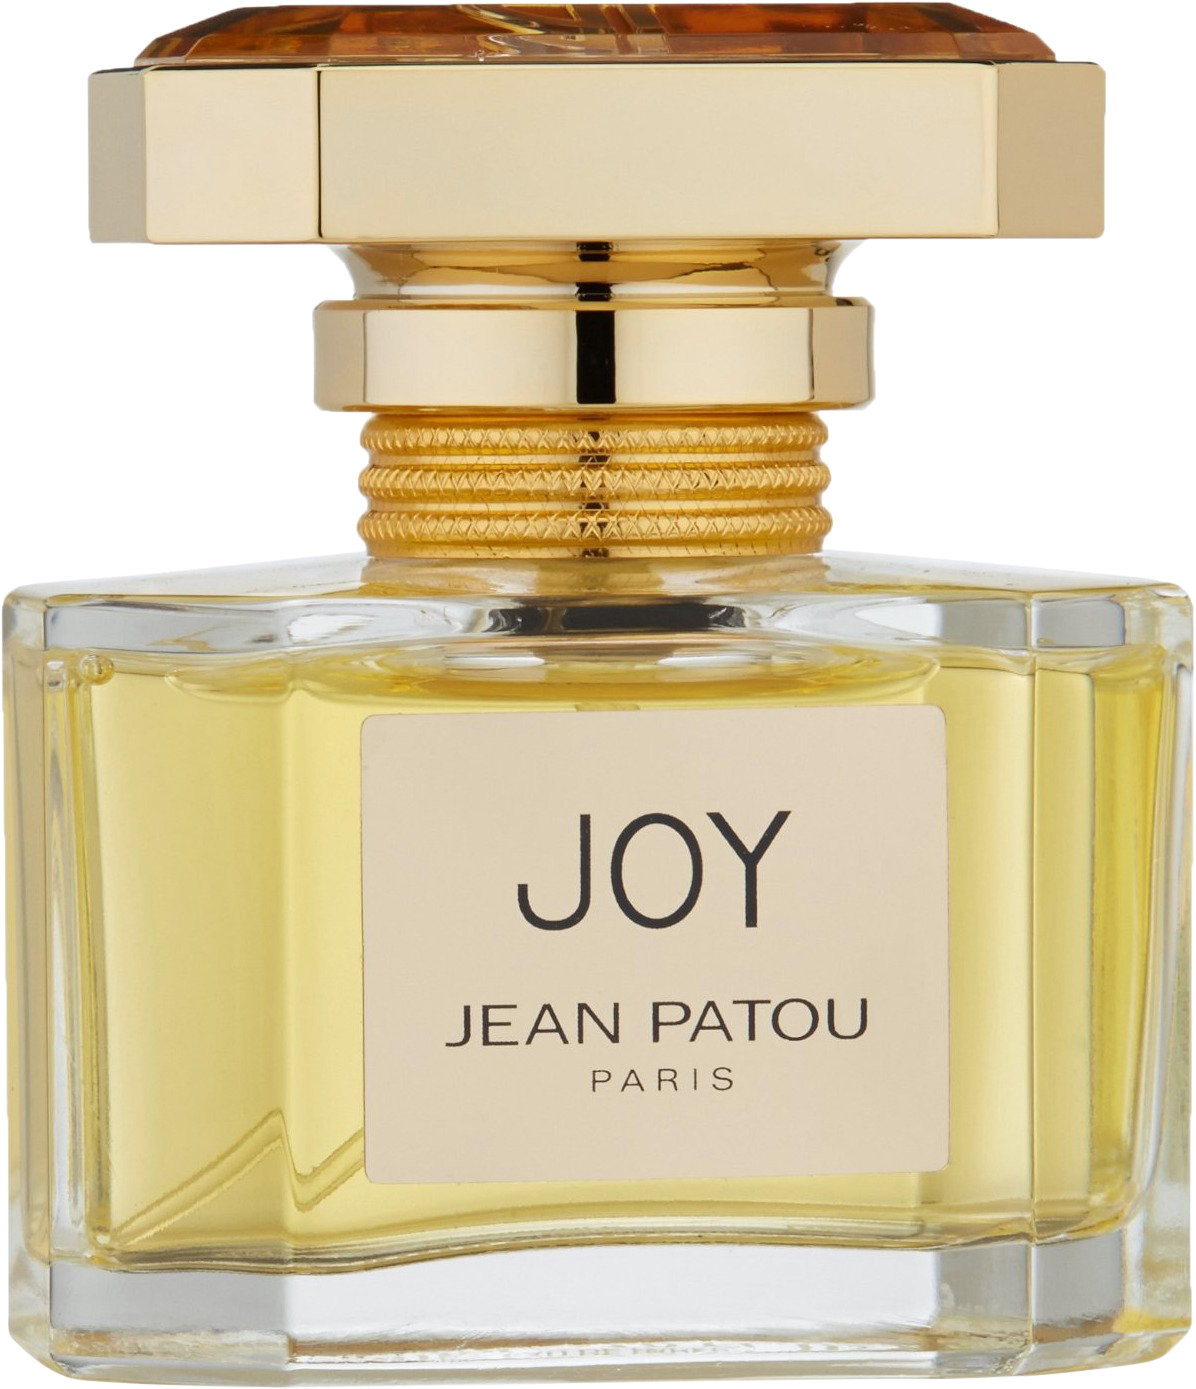 Photos - Women's Fragrance Jean Patou Joy Eau de Parfum  (30ml)